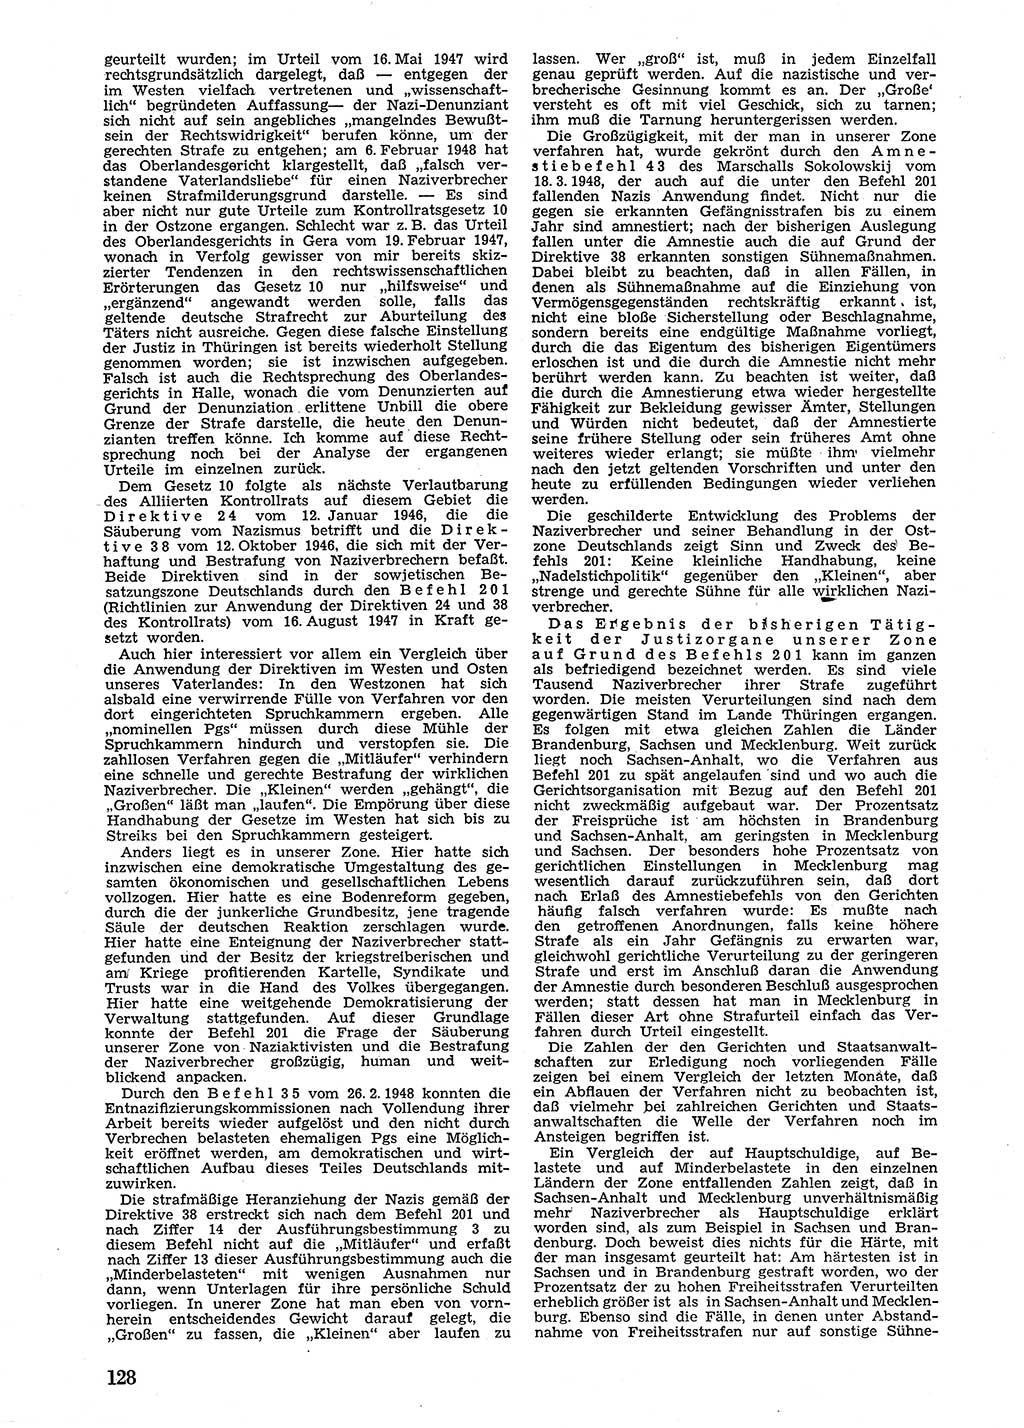 Neue Justiz (NJ), Zeitschrift für Recht und Rechtswissenschaft [Sowjetische Besatzungszone (SBZ) Deutschland], 2. Jahrgang 1948, Seite 128 (NJ SBZ Dtl. 1948, S. 128)